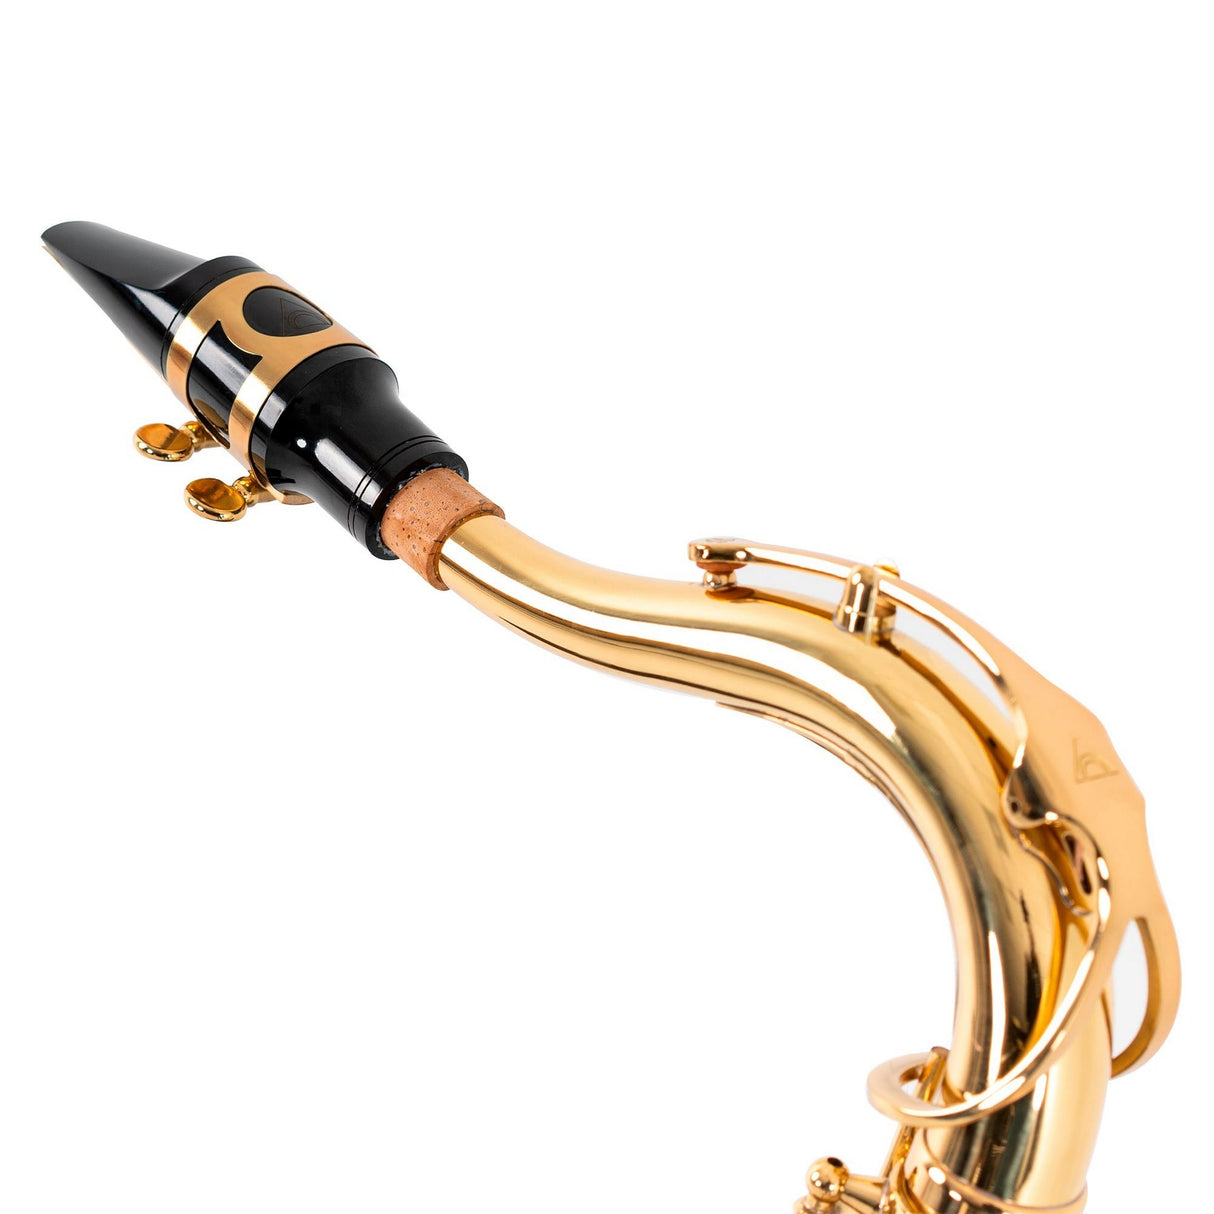 Antigua Vosi TS2155LQ Bb Tenor Saxophone, All-Lacquer Body